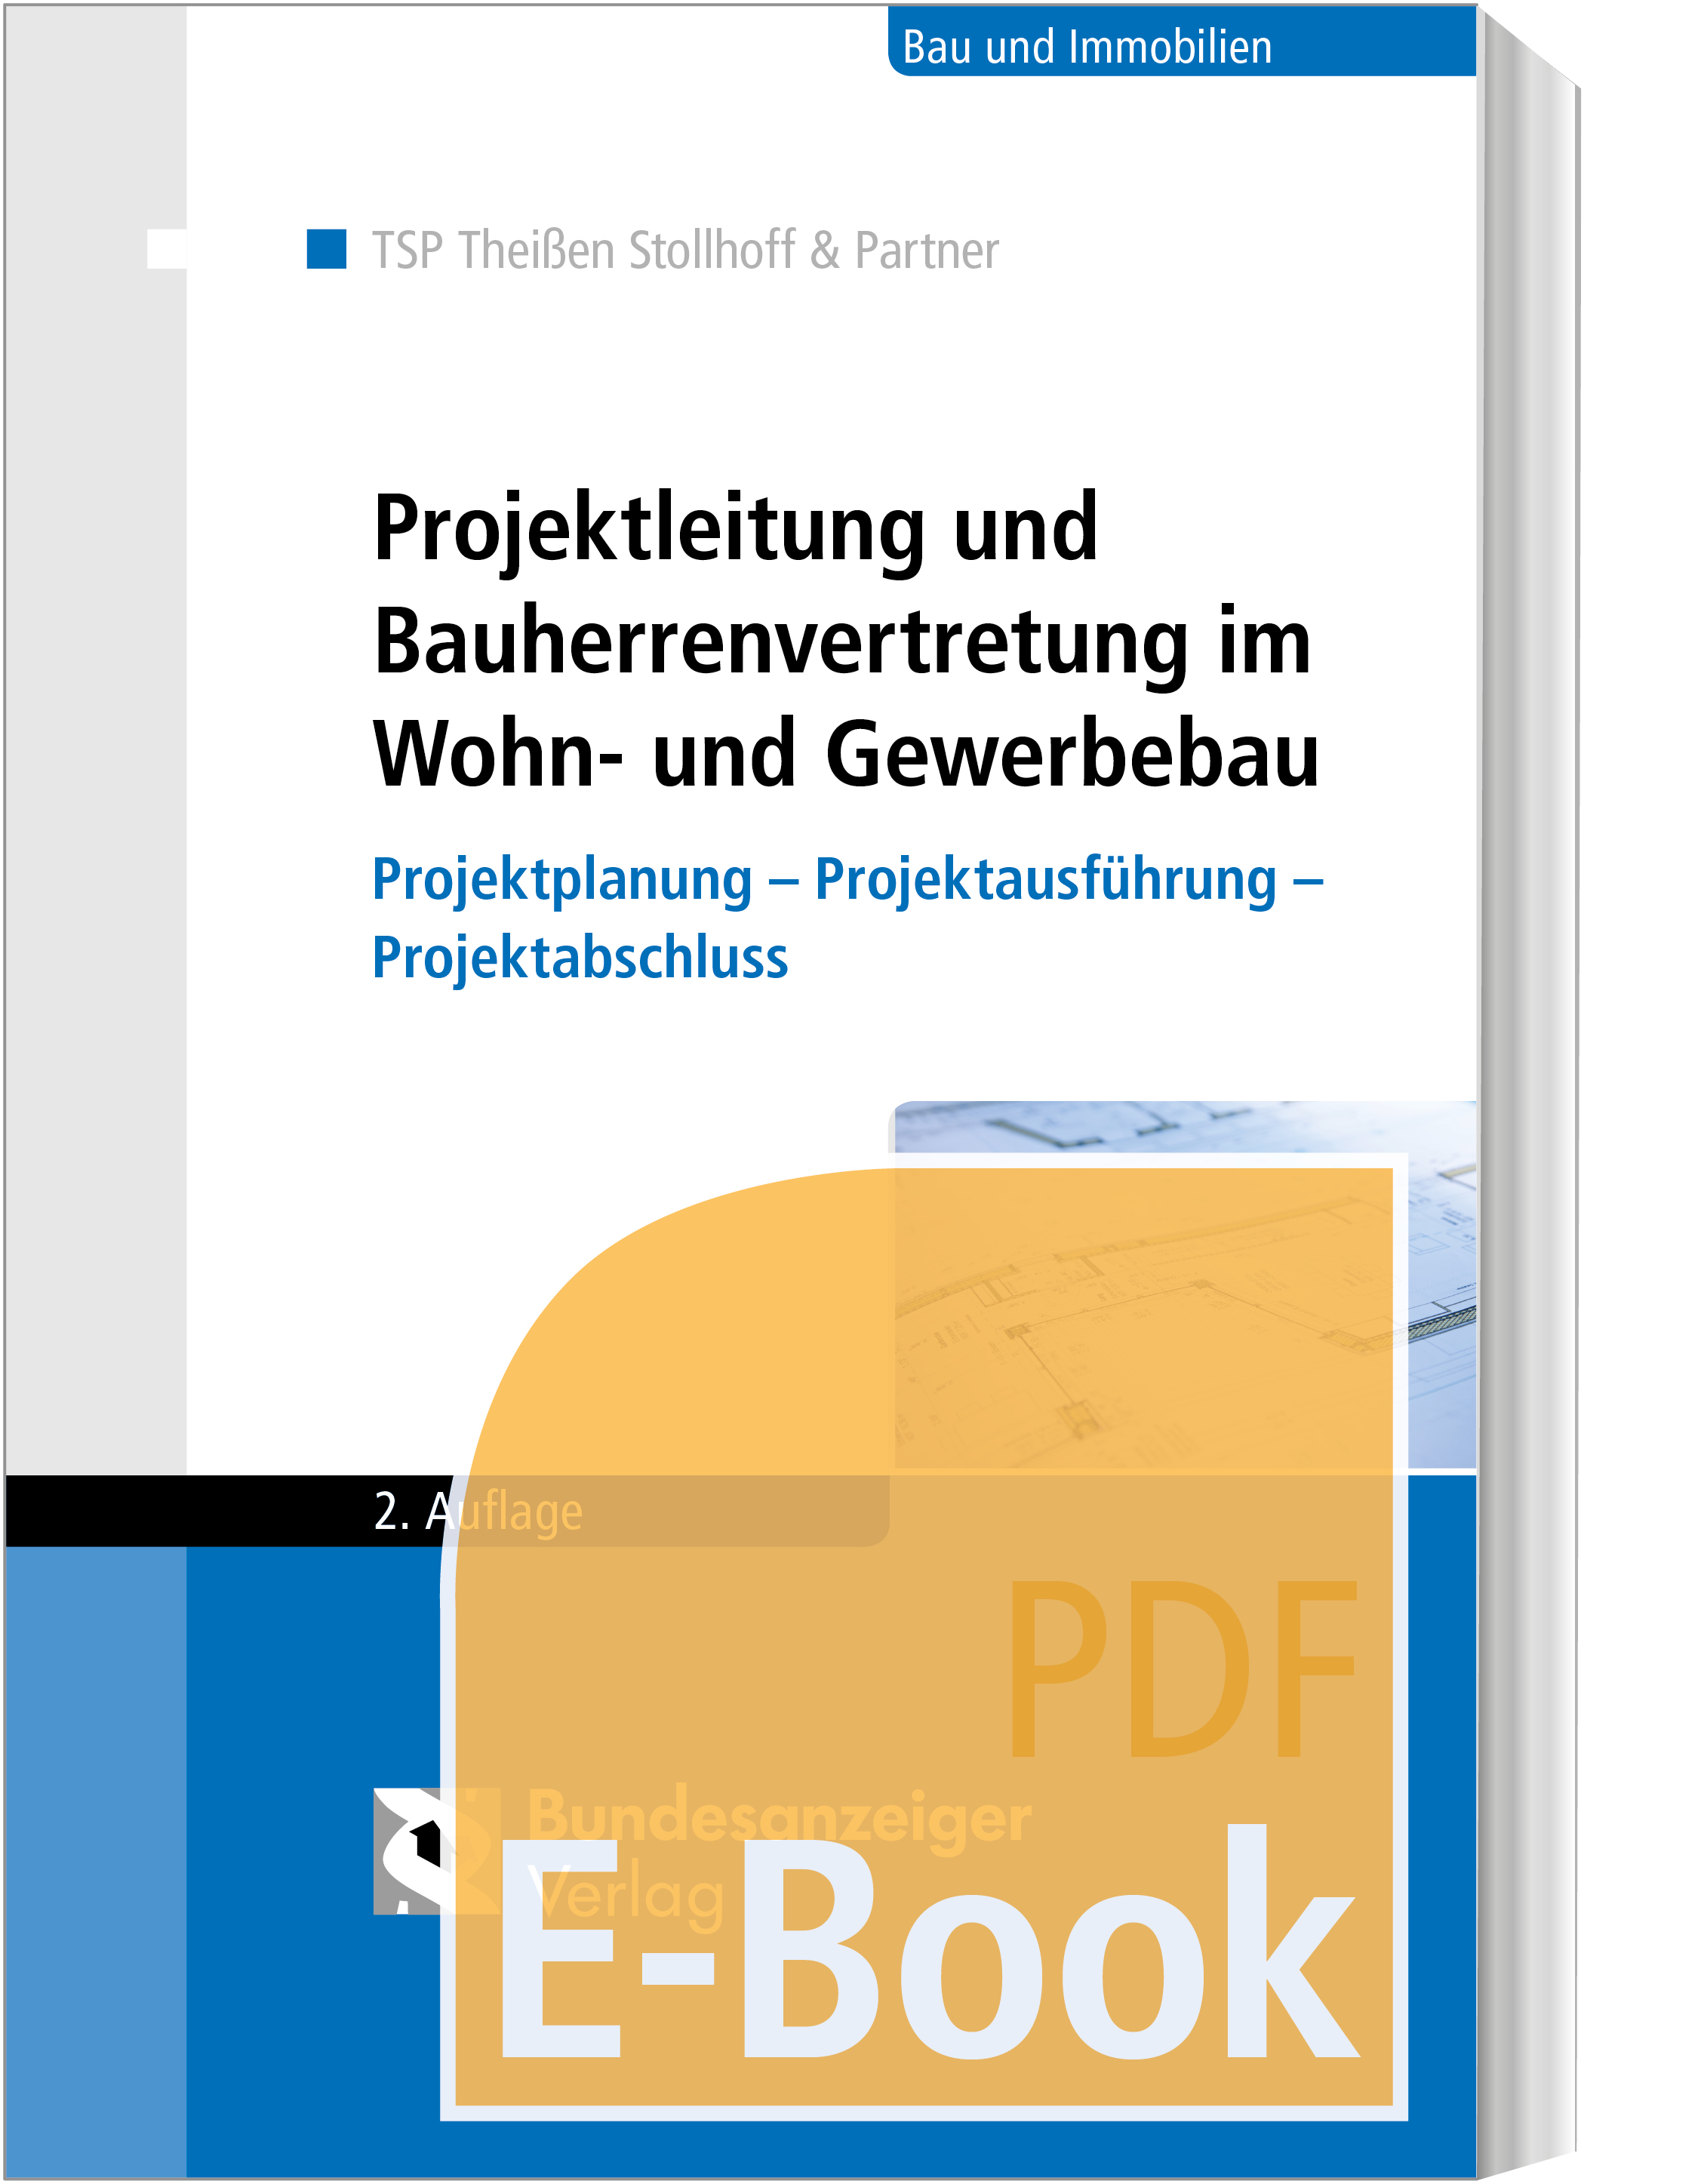 Projektleitung und Bauherrenvertretung im Wohn- und Gewerbebau (E-Book)